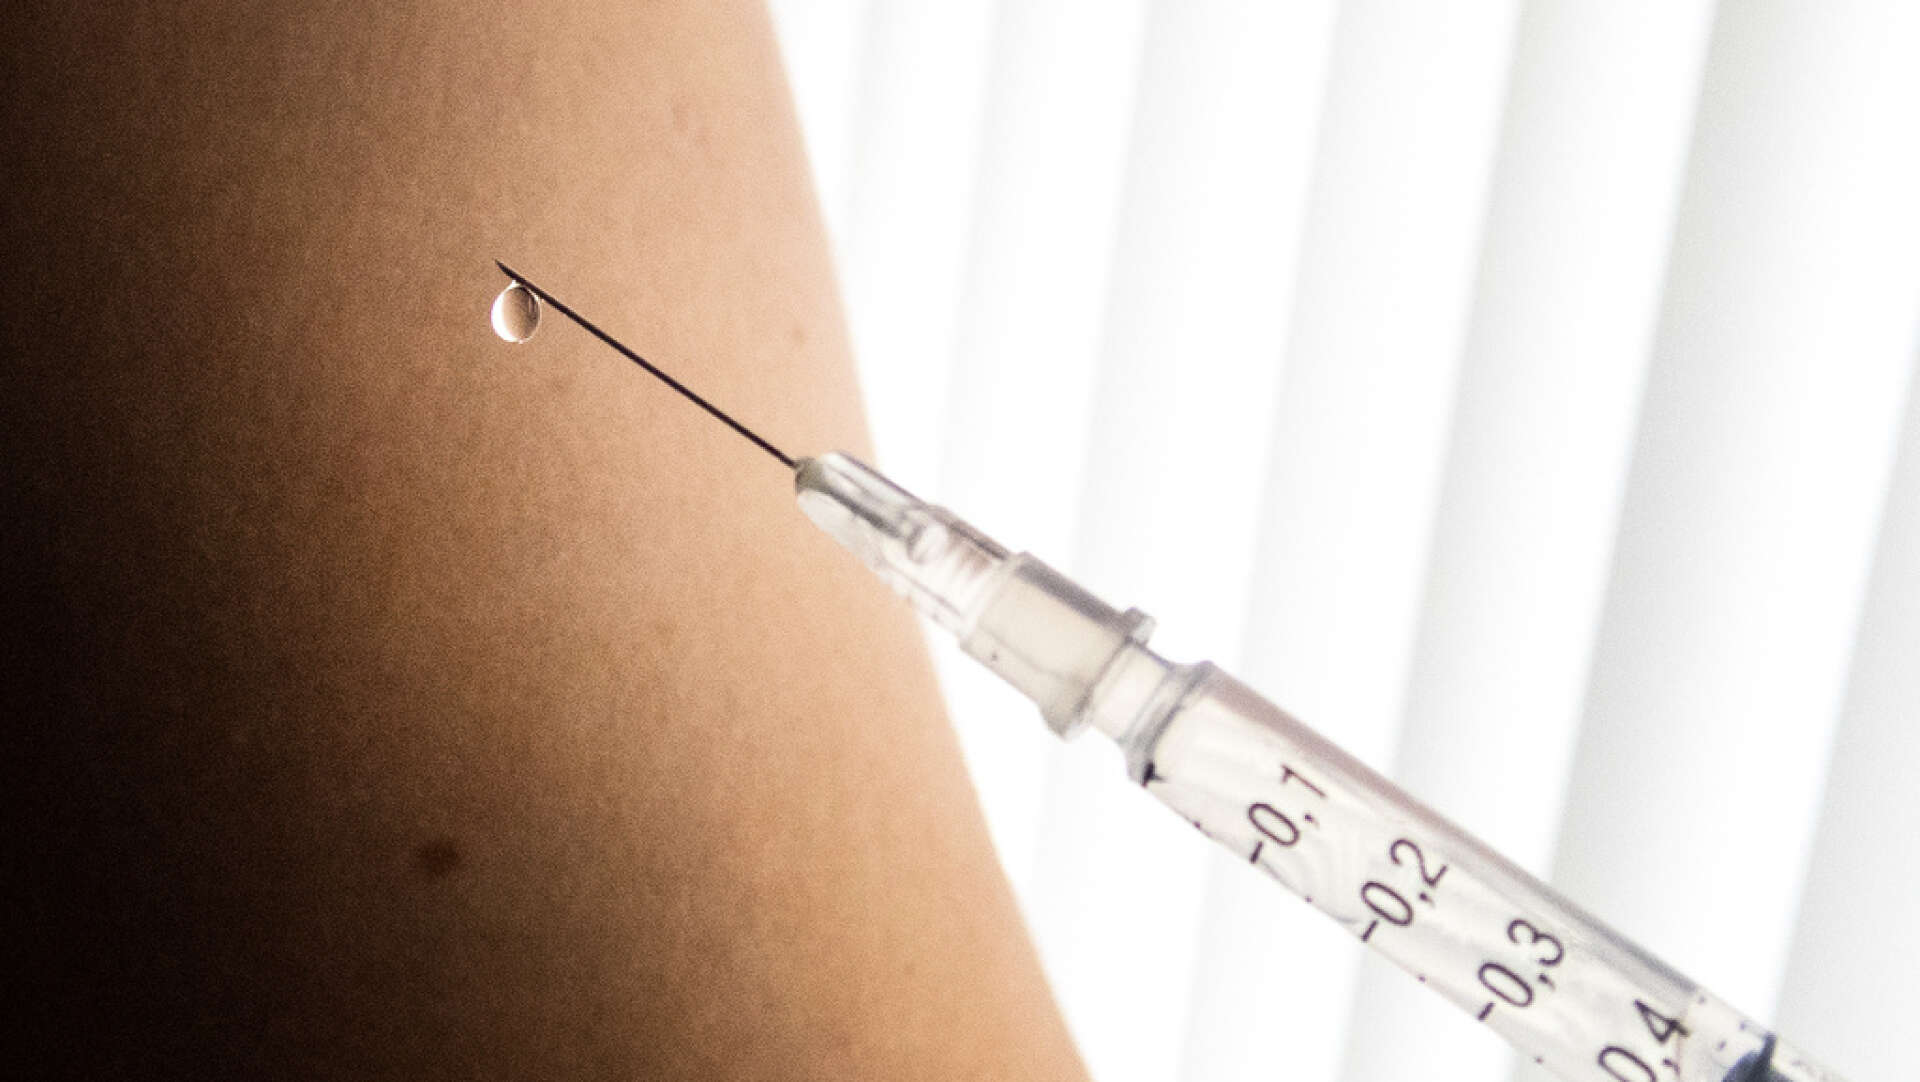 Både Astra Zenca och kinesiska Cansino har rapporterat lovande resultat från sina vaccinstudier. Arkivbild.